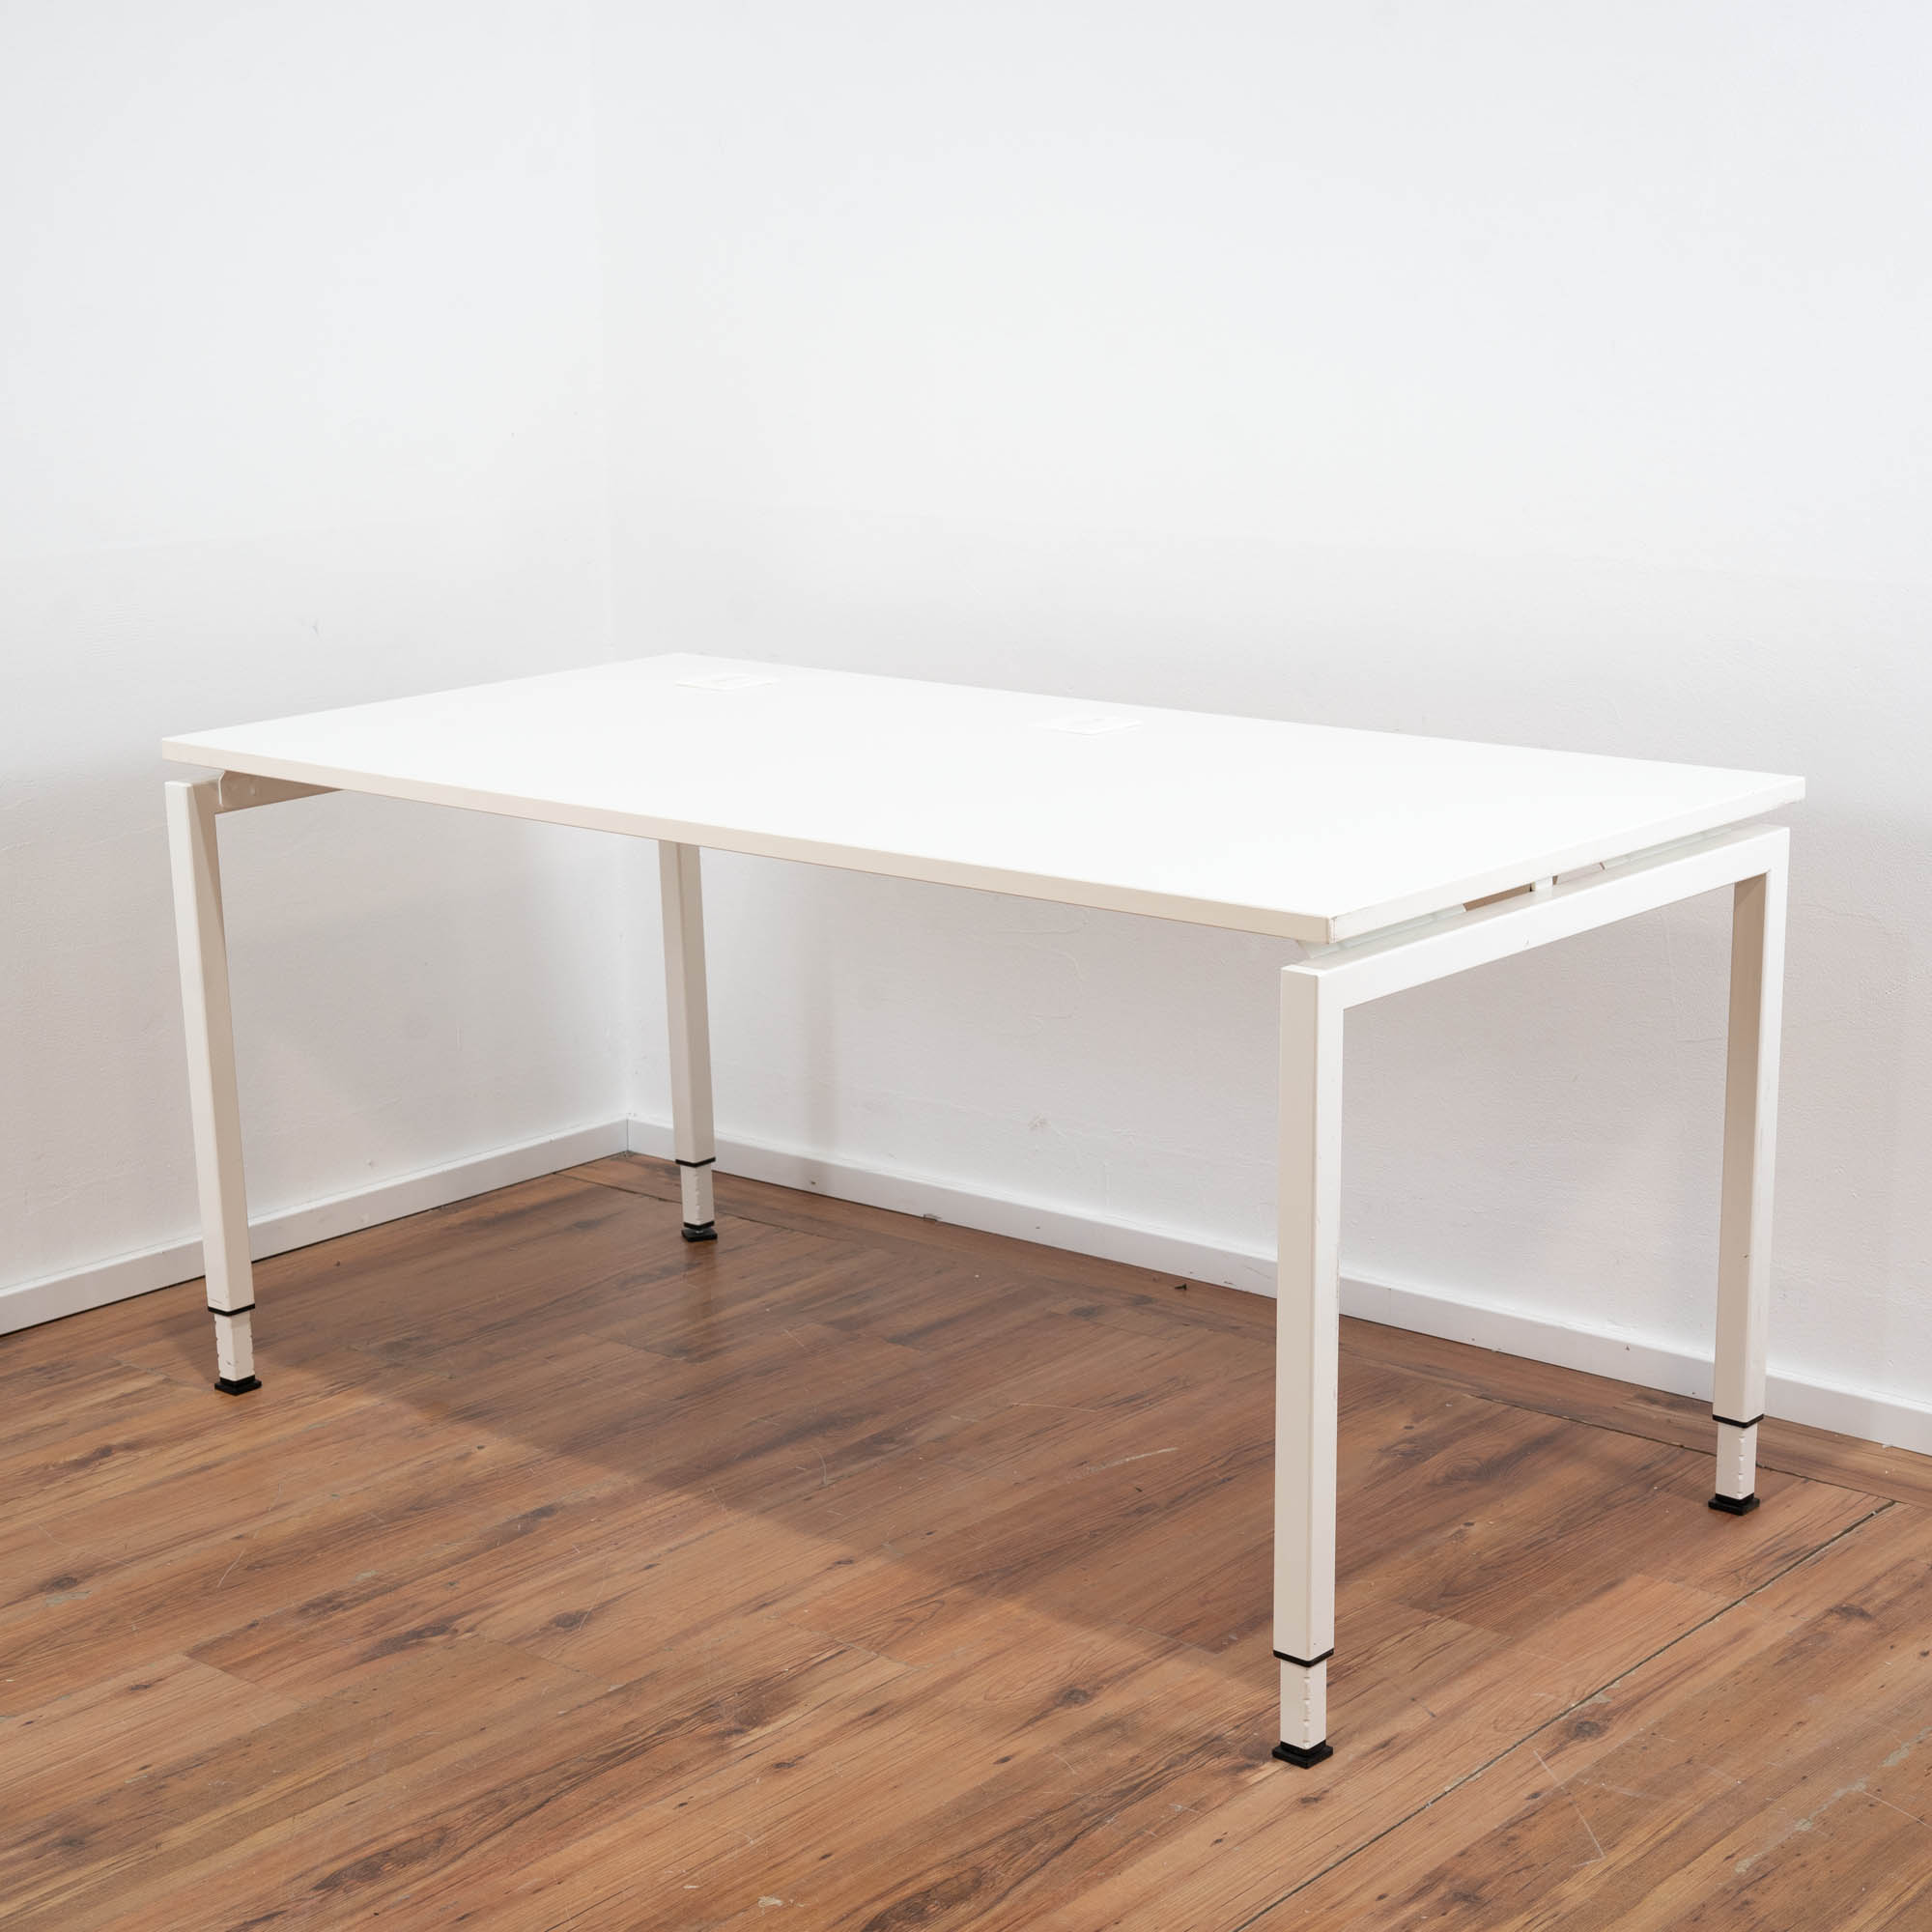 Febrü Schreibtisch weiß - 160 x 80 cm - höhenverstellbar